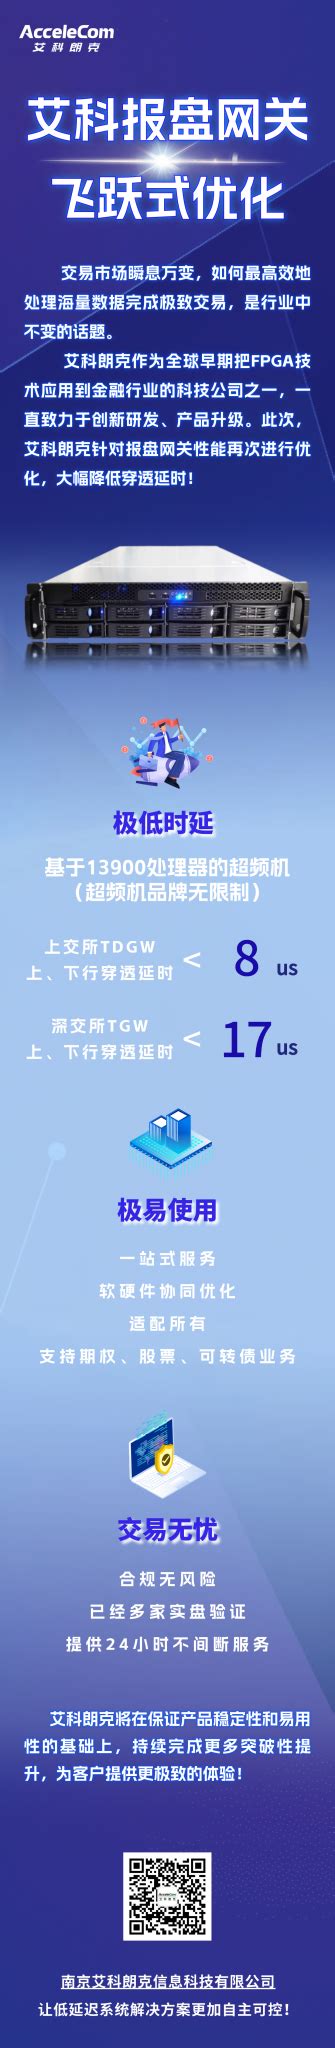 郑州二七杰拉网咖使用多嘴猫无线呼叫器--郑州多嘴猫电子技术有限公司